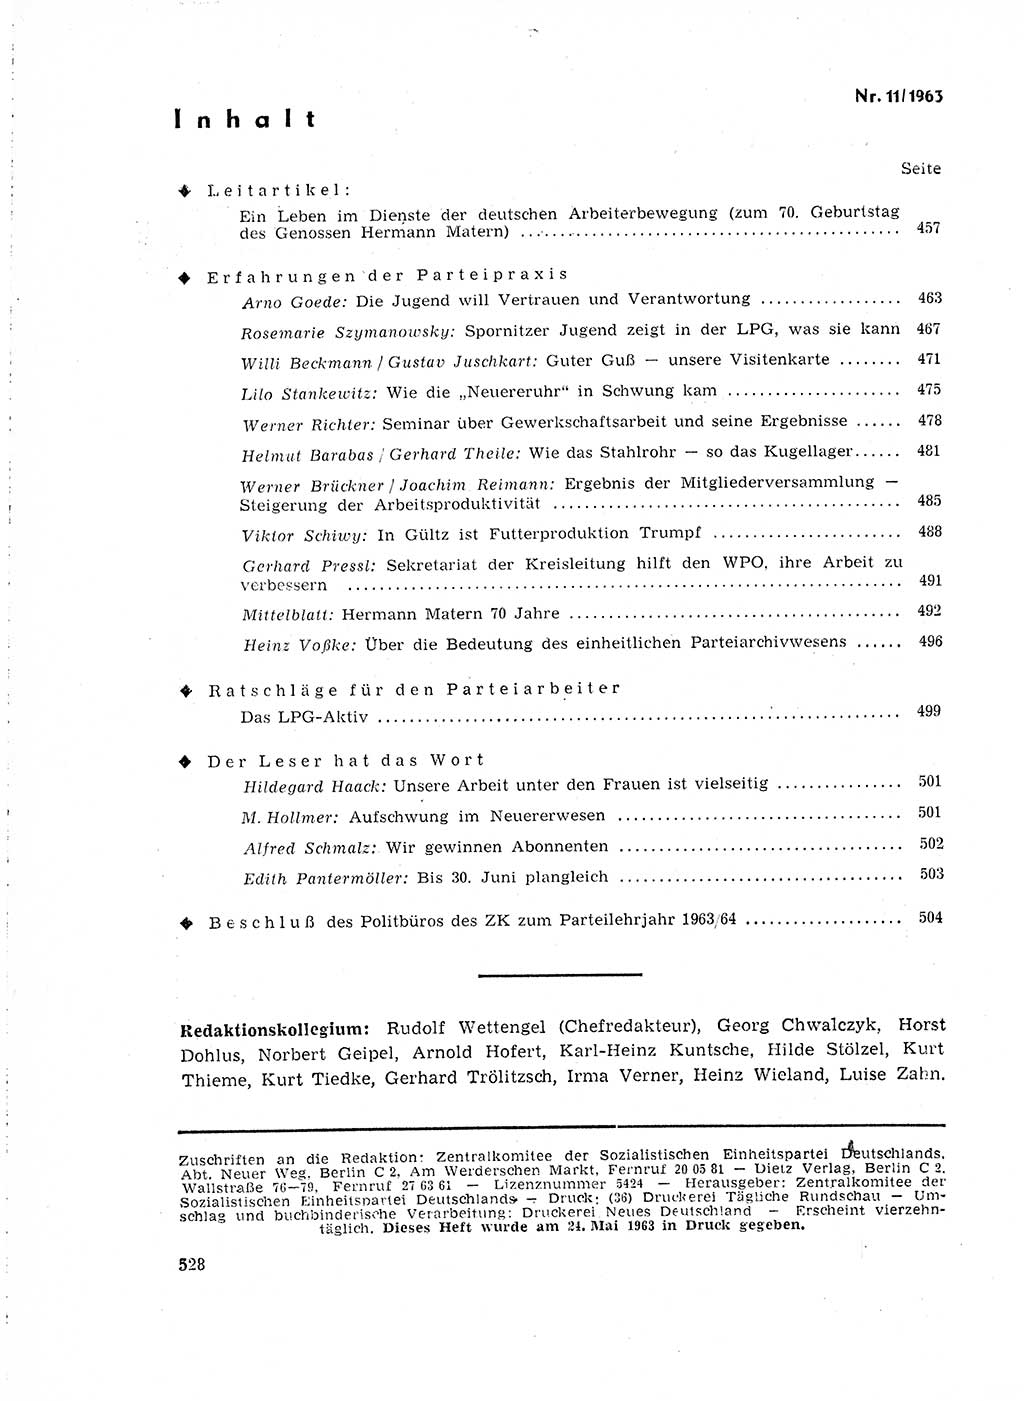 Neuer Weg (NW), Organ des Zentralkomitees (ZK) der SED (Sozialistische Einheitspartei Deutschlands) für Fragen des Parteilebens, 18. Jahrgang [Deutsche Demokratische Republik (DDR)] 1963, Seite 528 (NW ZK SED DDR 1963, S. 528)